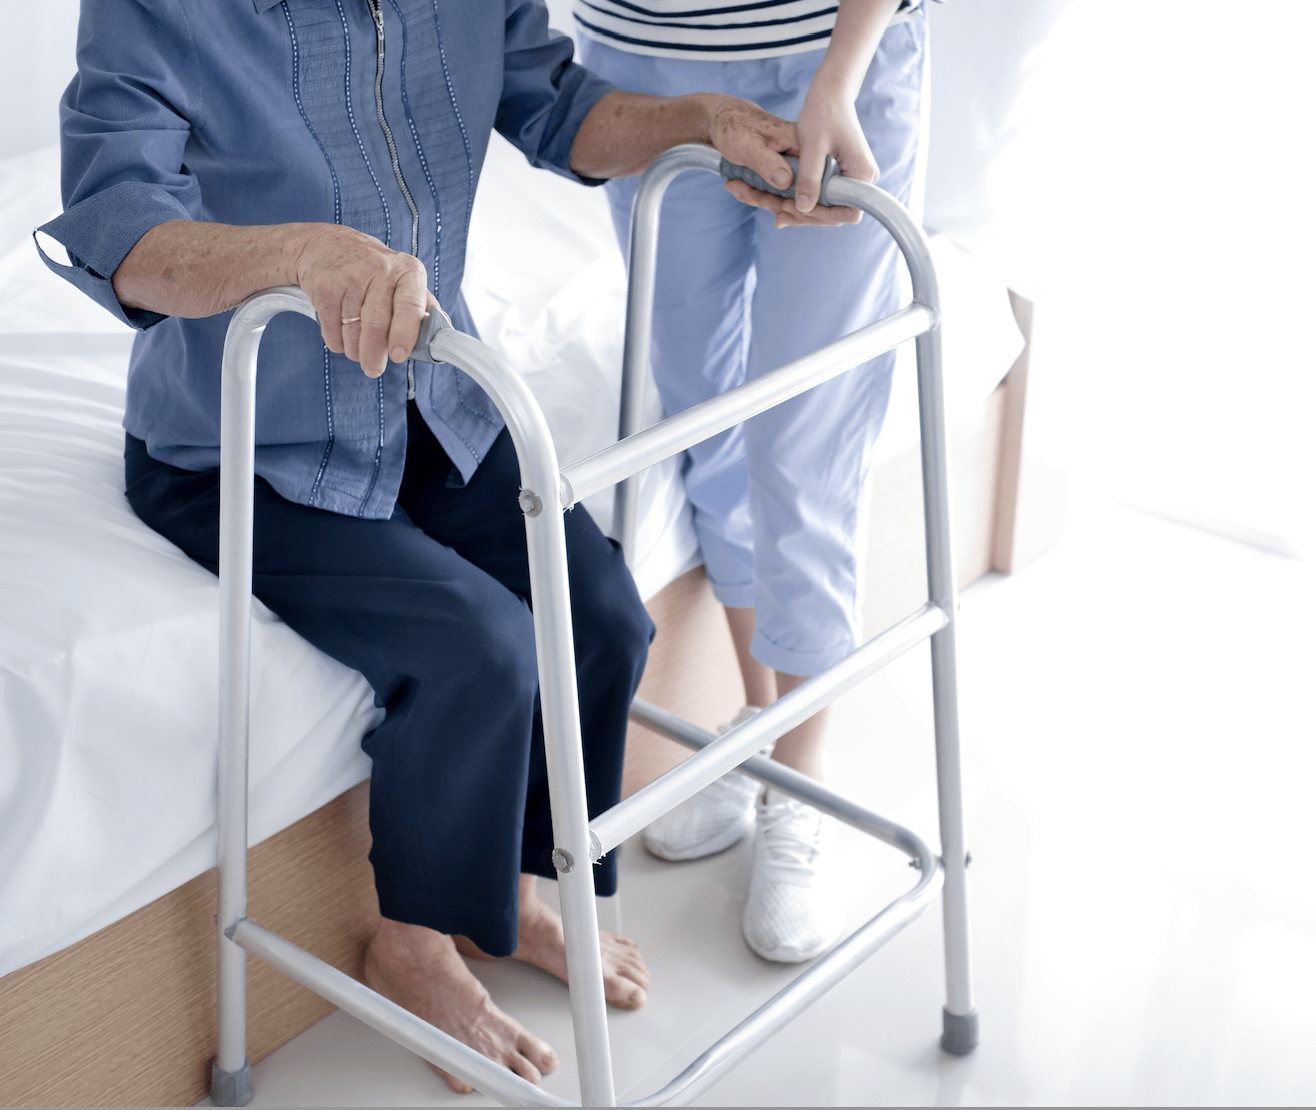 Rehabilitación de Prótesis de Cadera: cuidados